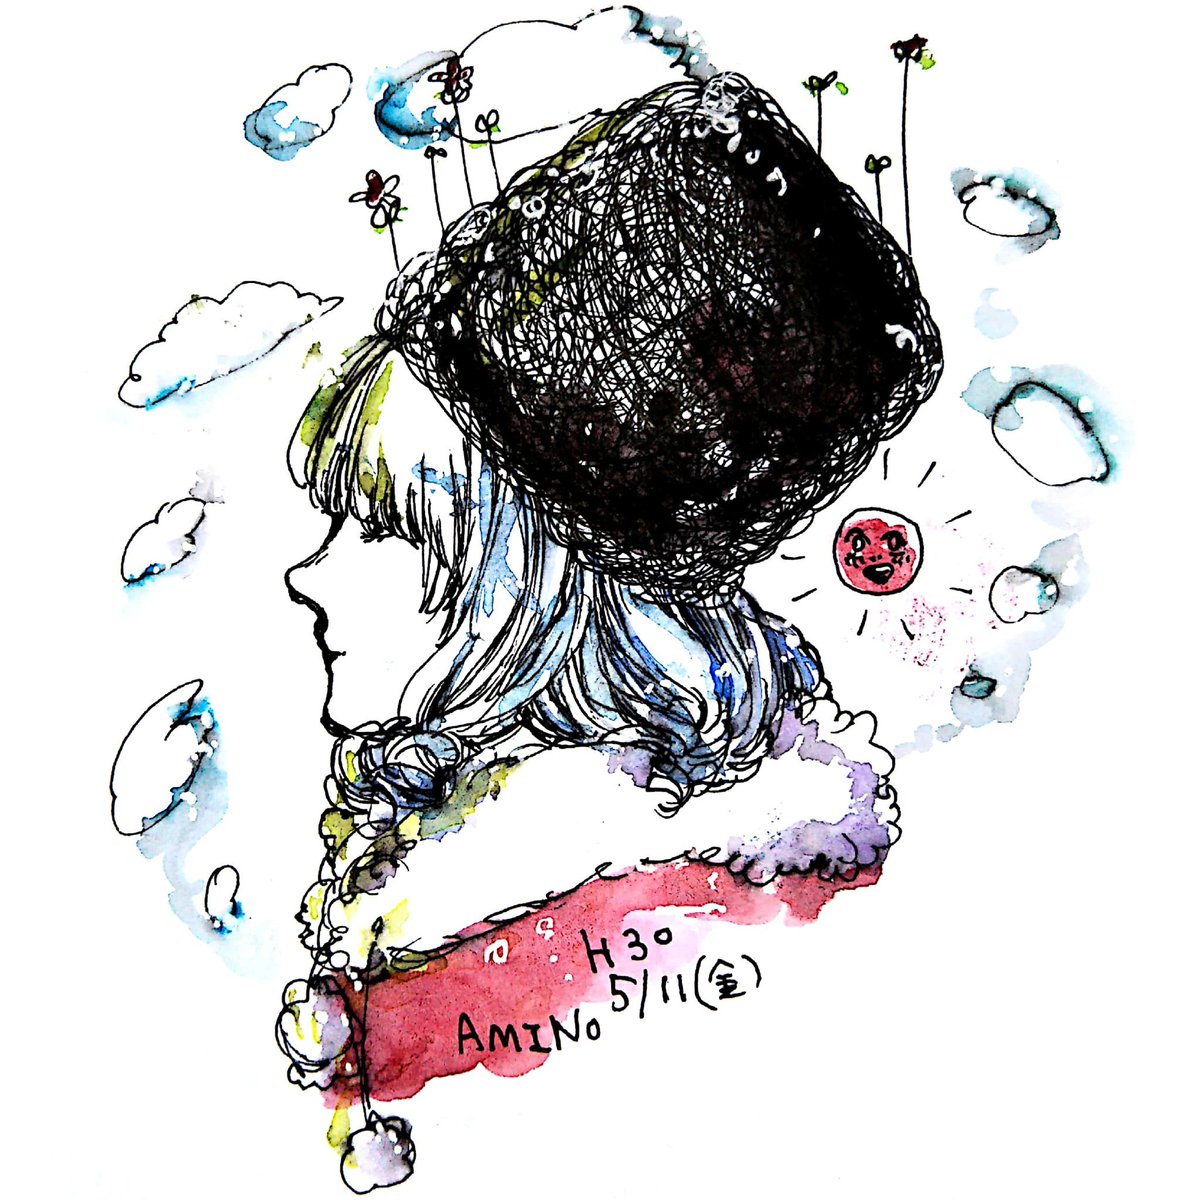 「FINLANDSかっこいい…モコモコの帽子描きたくなりました 」|中田アミノのイラスト